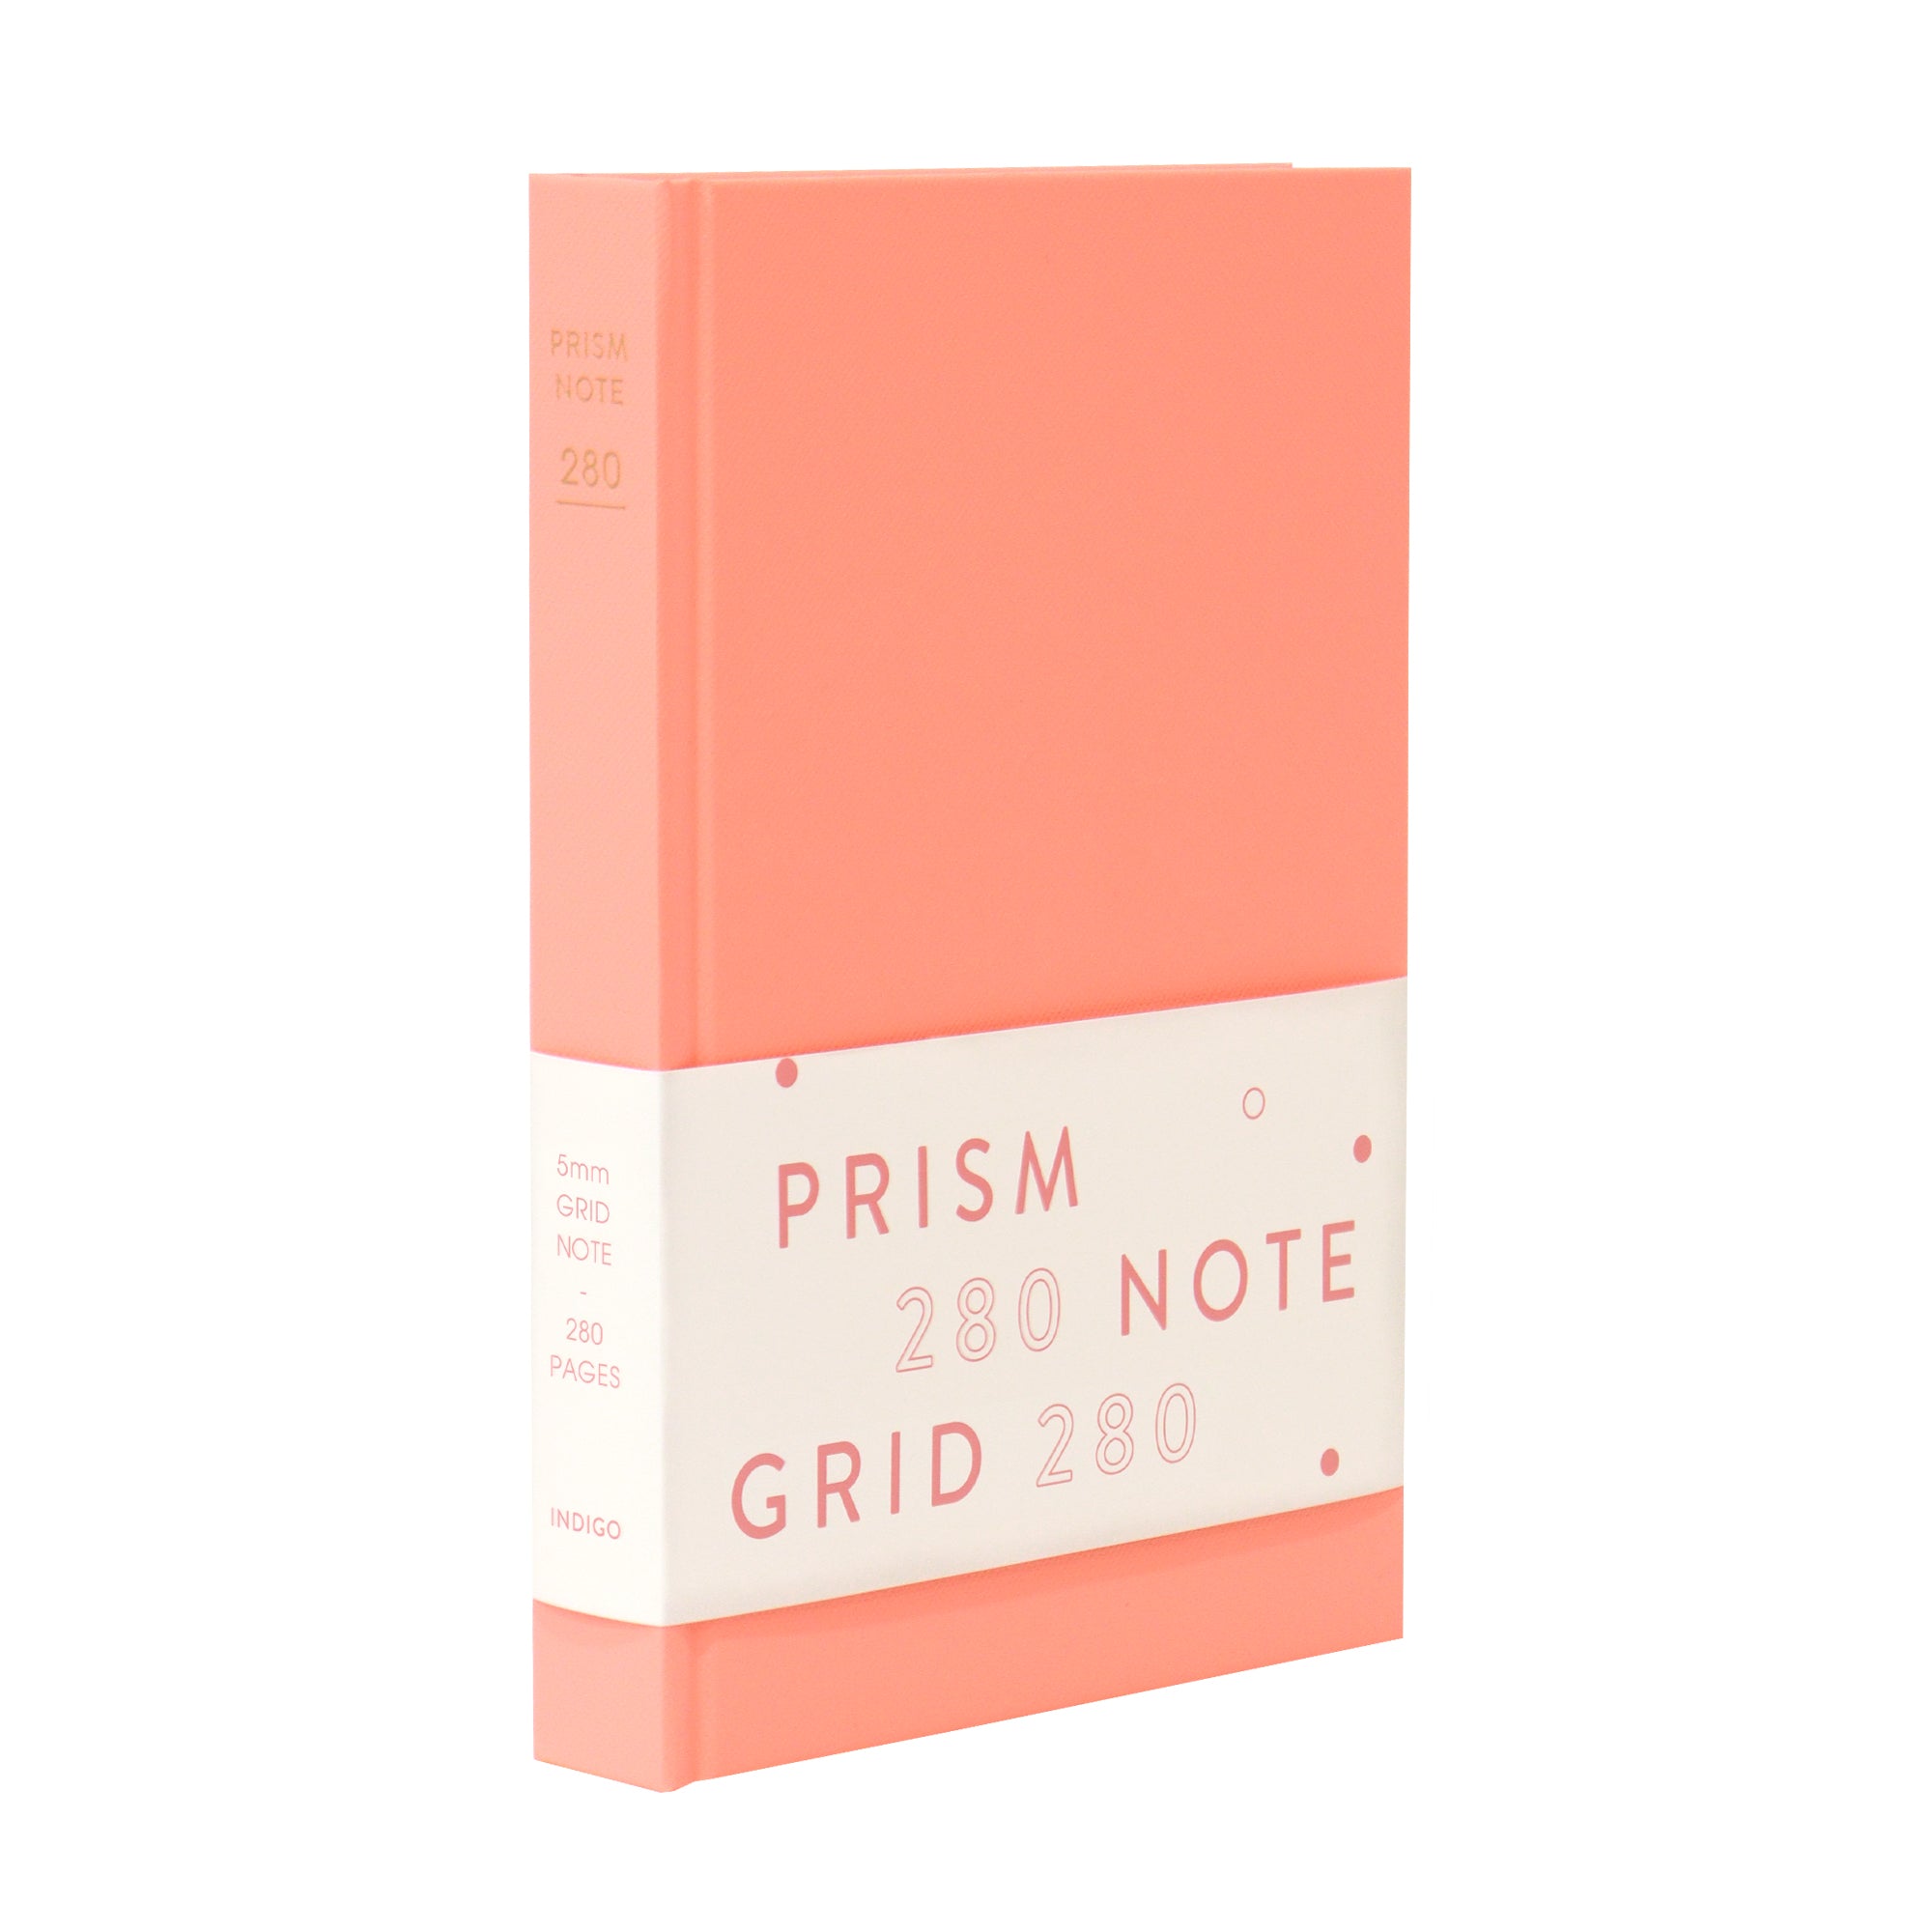 INDIGO Prism 280 Grid hardcover note (24edition)